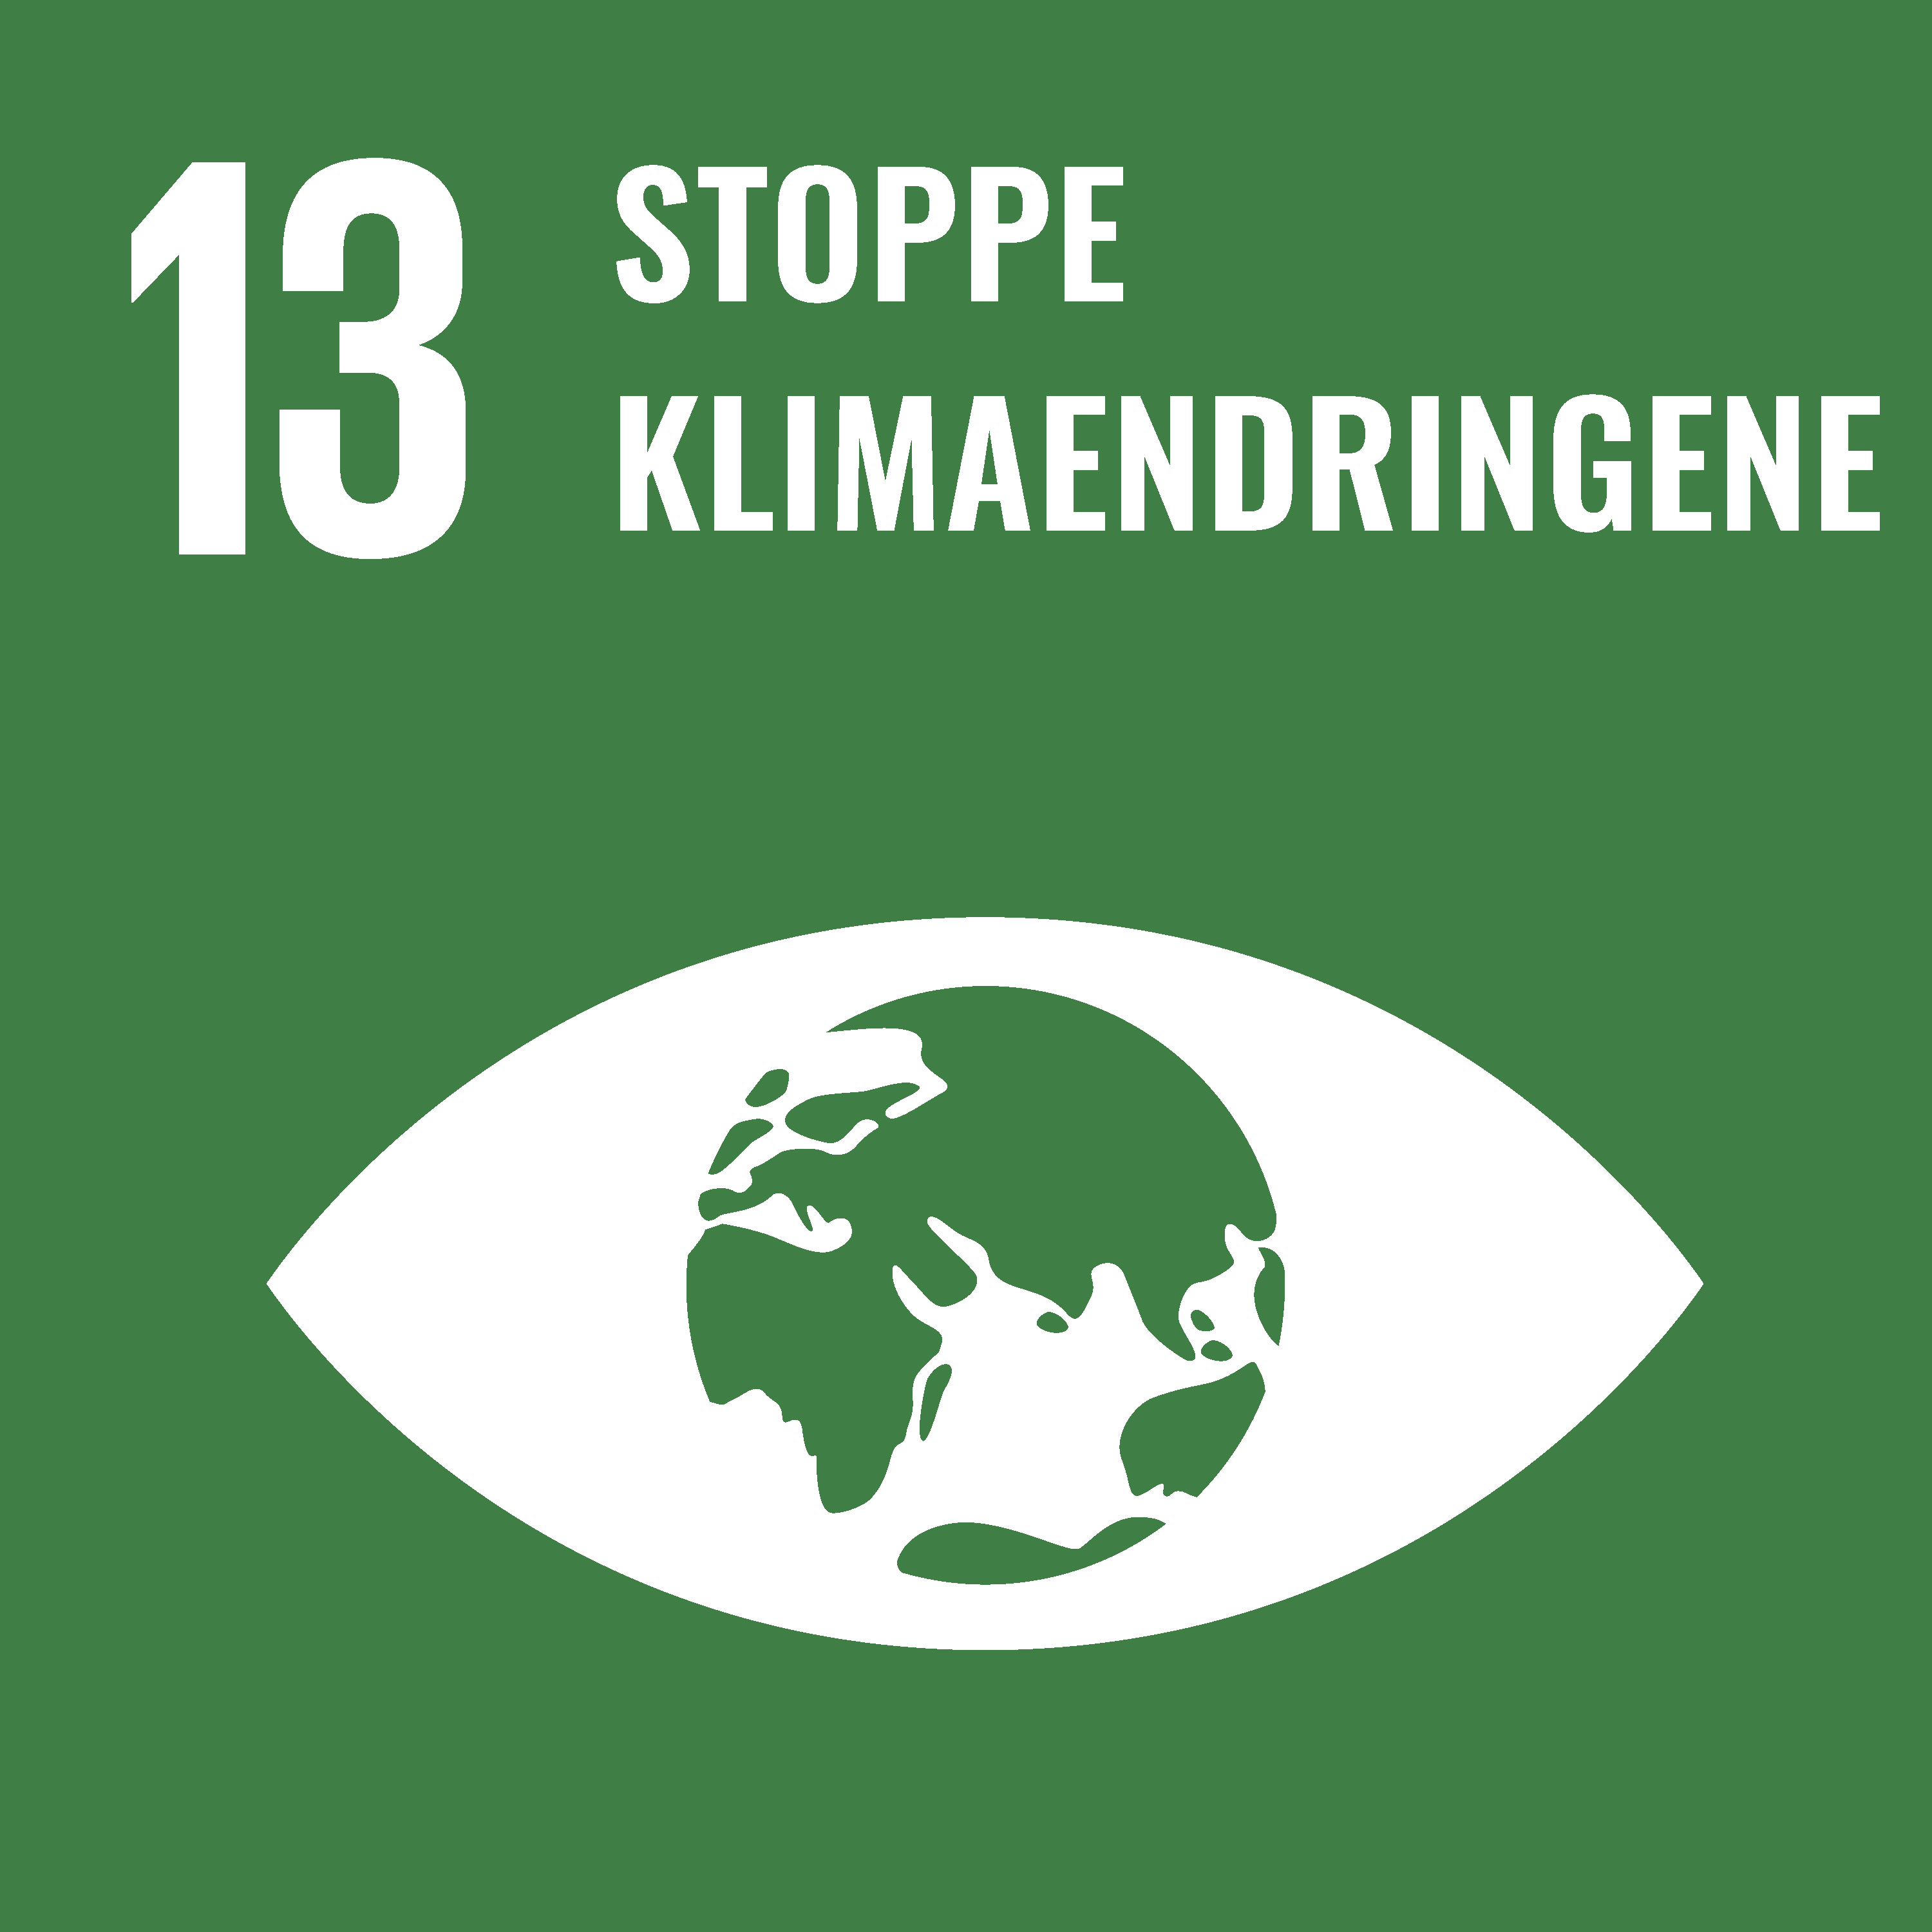 Stoppe klimaendringene (SDG-13)